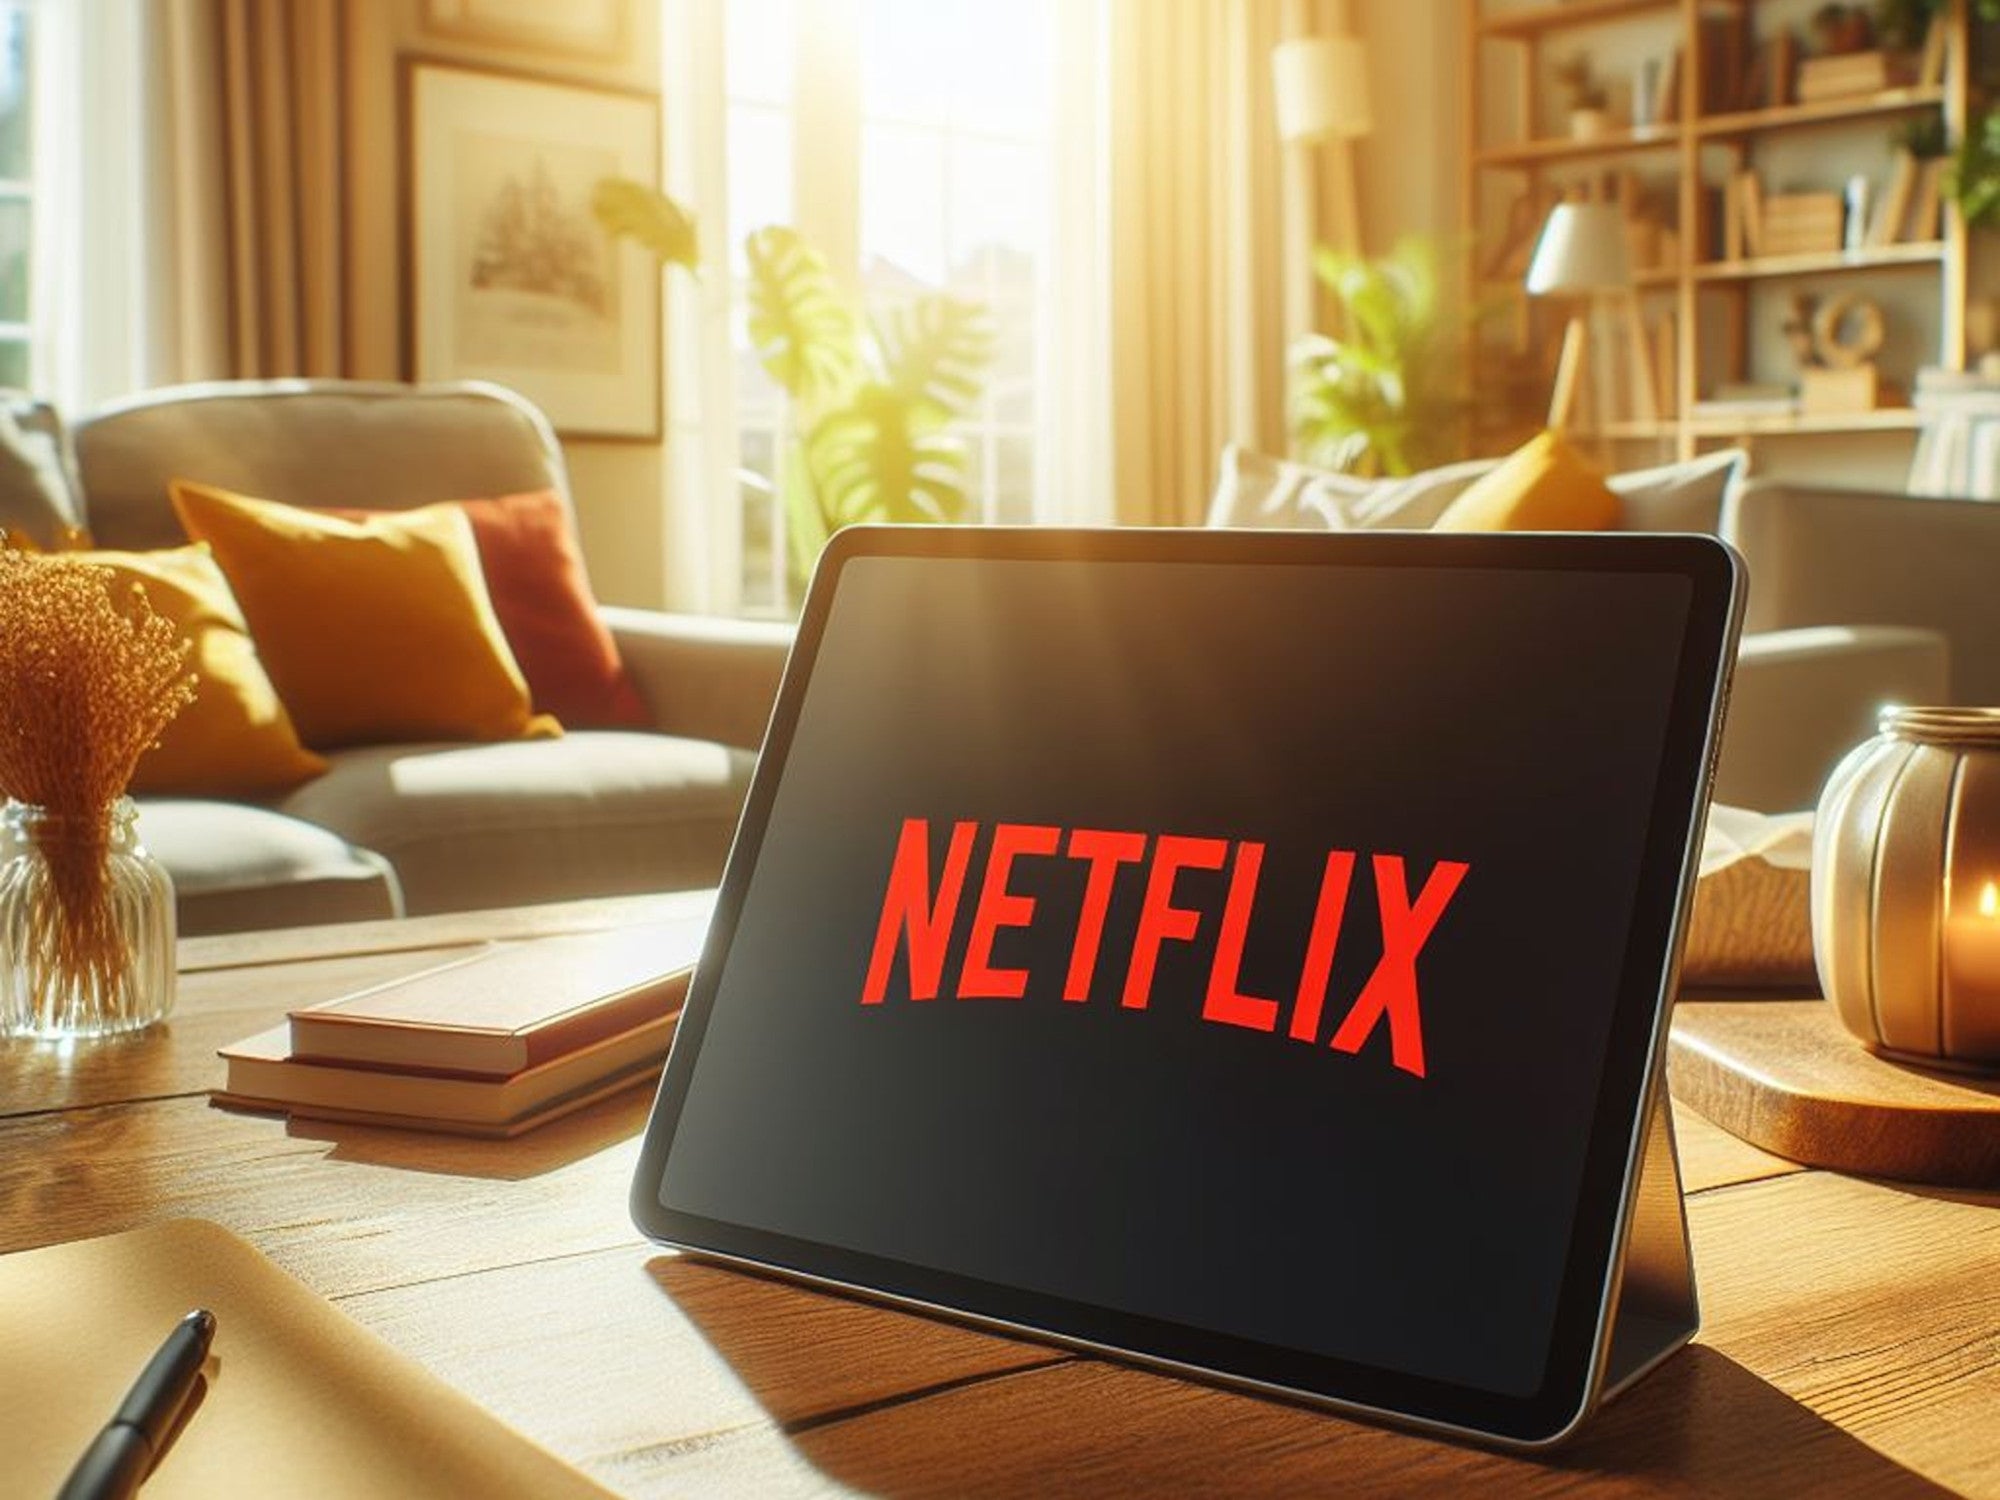 #Netflix überrascht mit gewaltigen Neuheiten im März